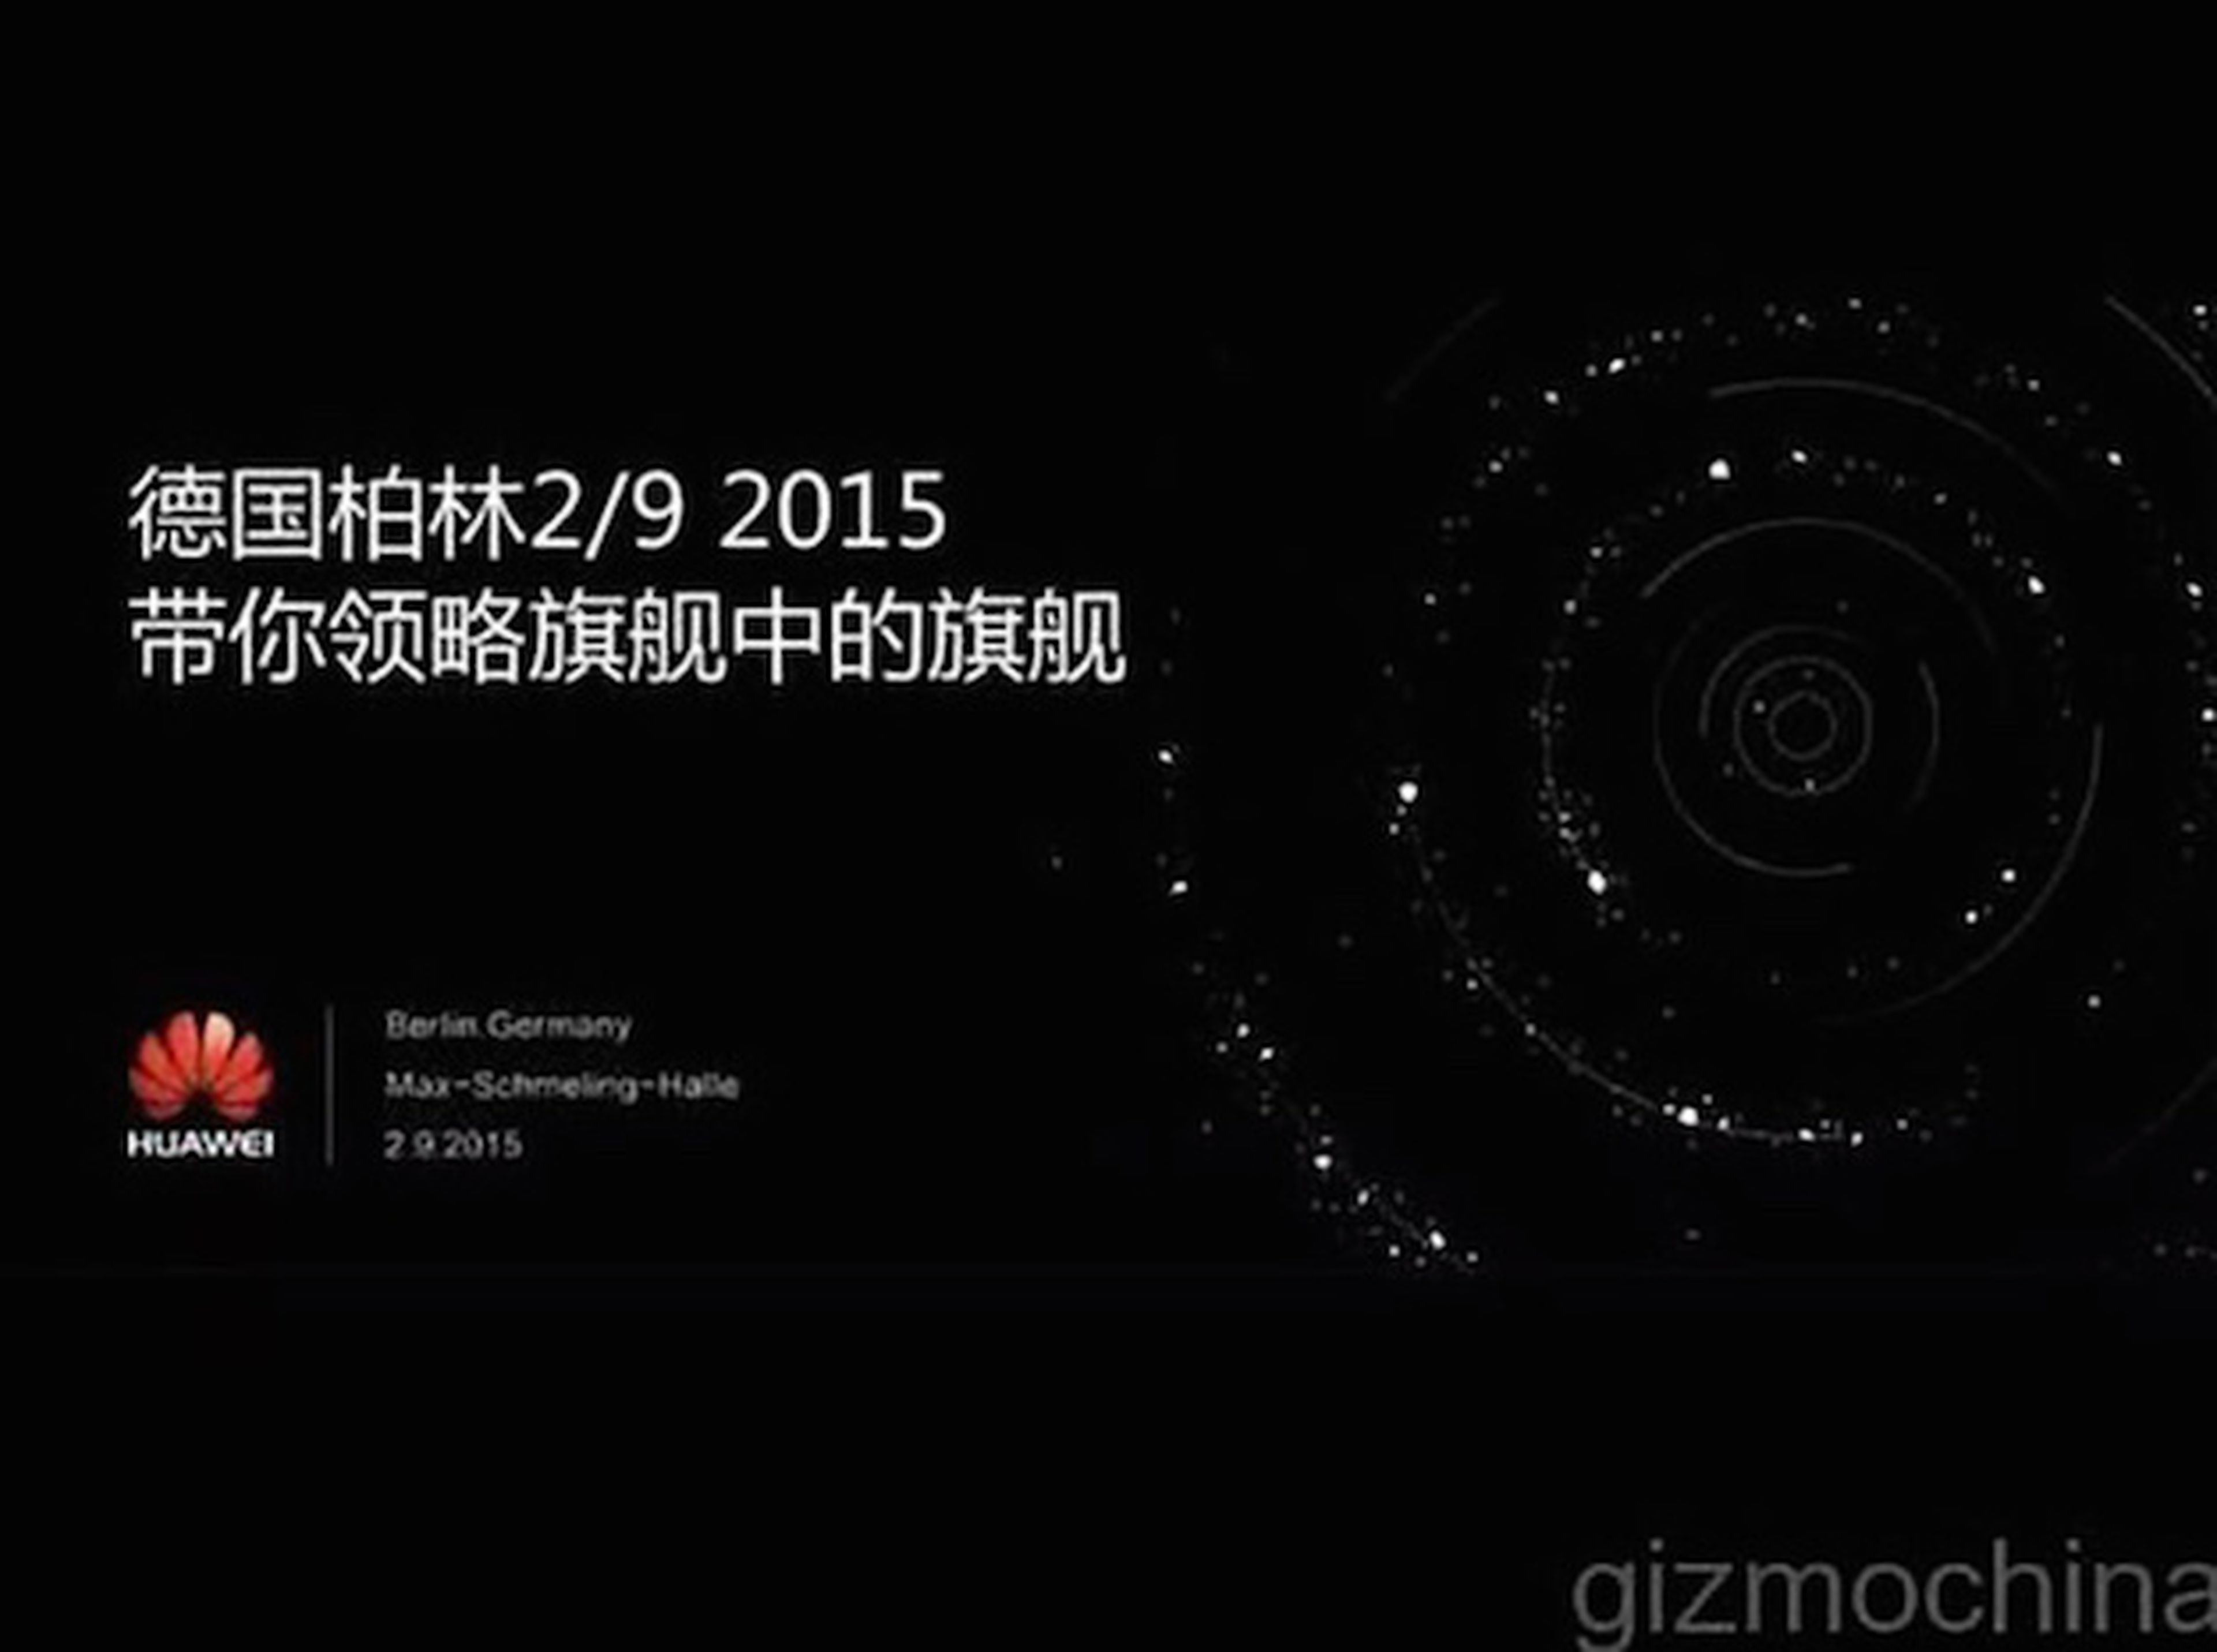 Huawei presentará el Huawei Mate 8 en el IFA de Berlín